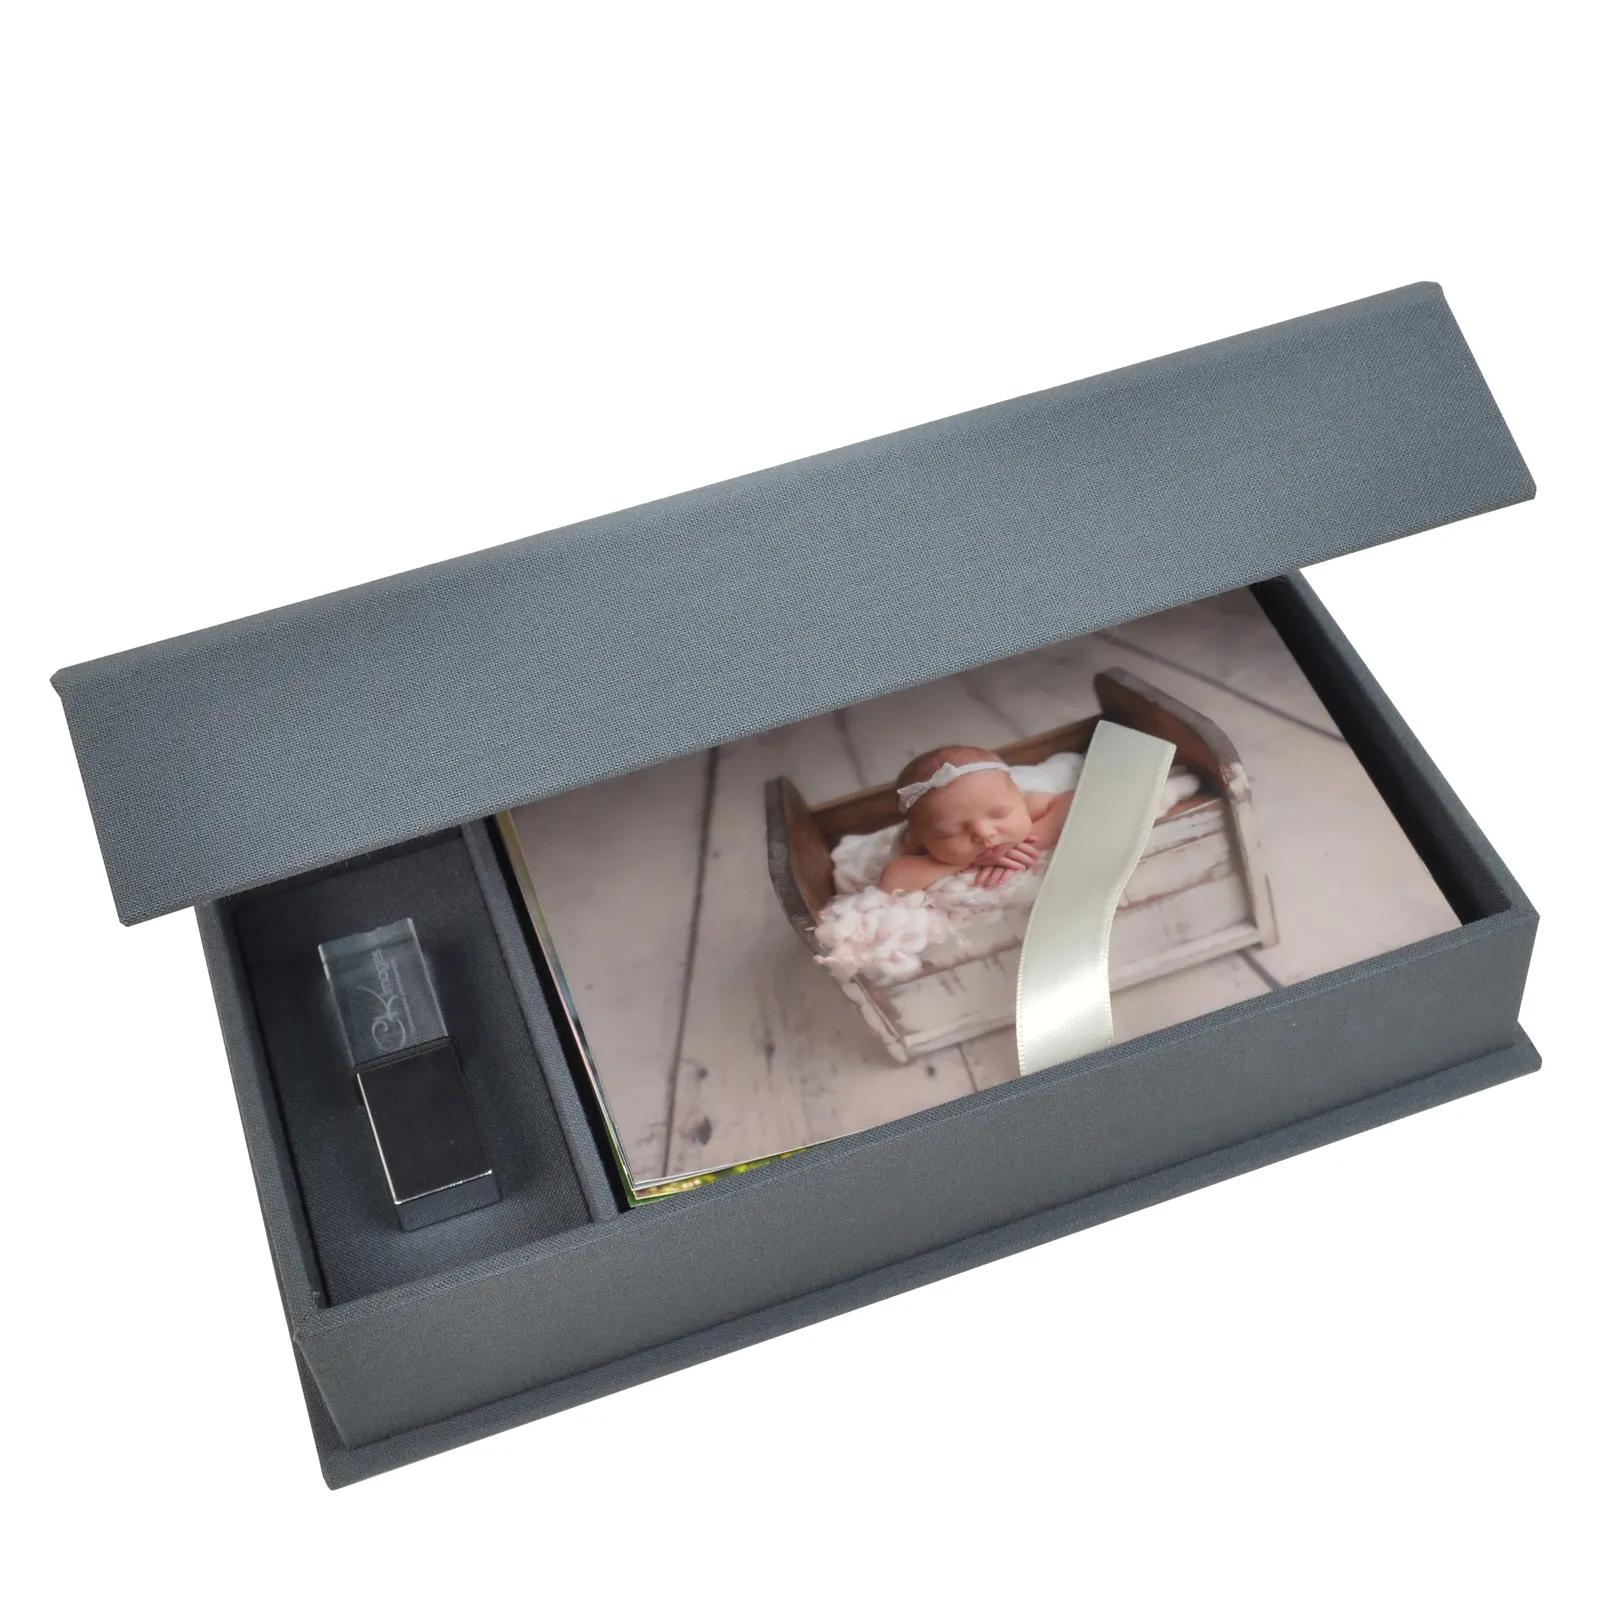 Linho foto caixa com slot USB Apresentação caixa para foto impressão 4X6 ou 5x7 ou 8x10 foto caixas